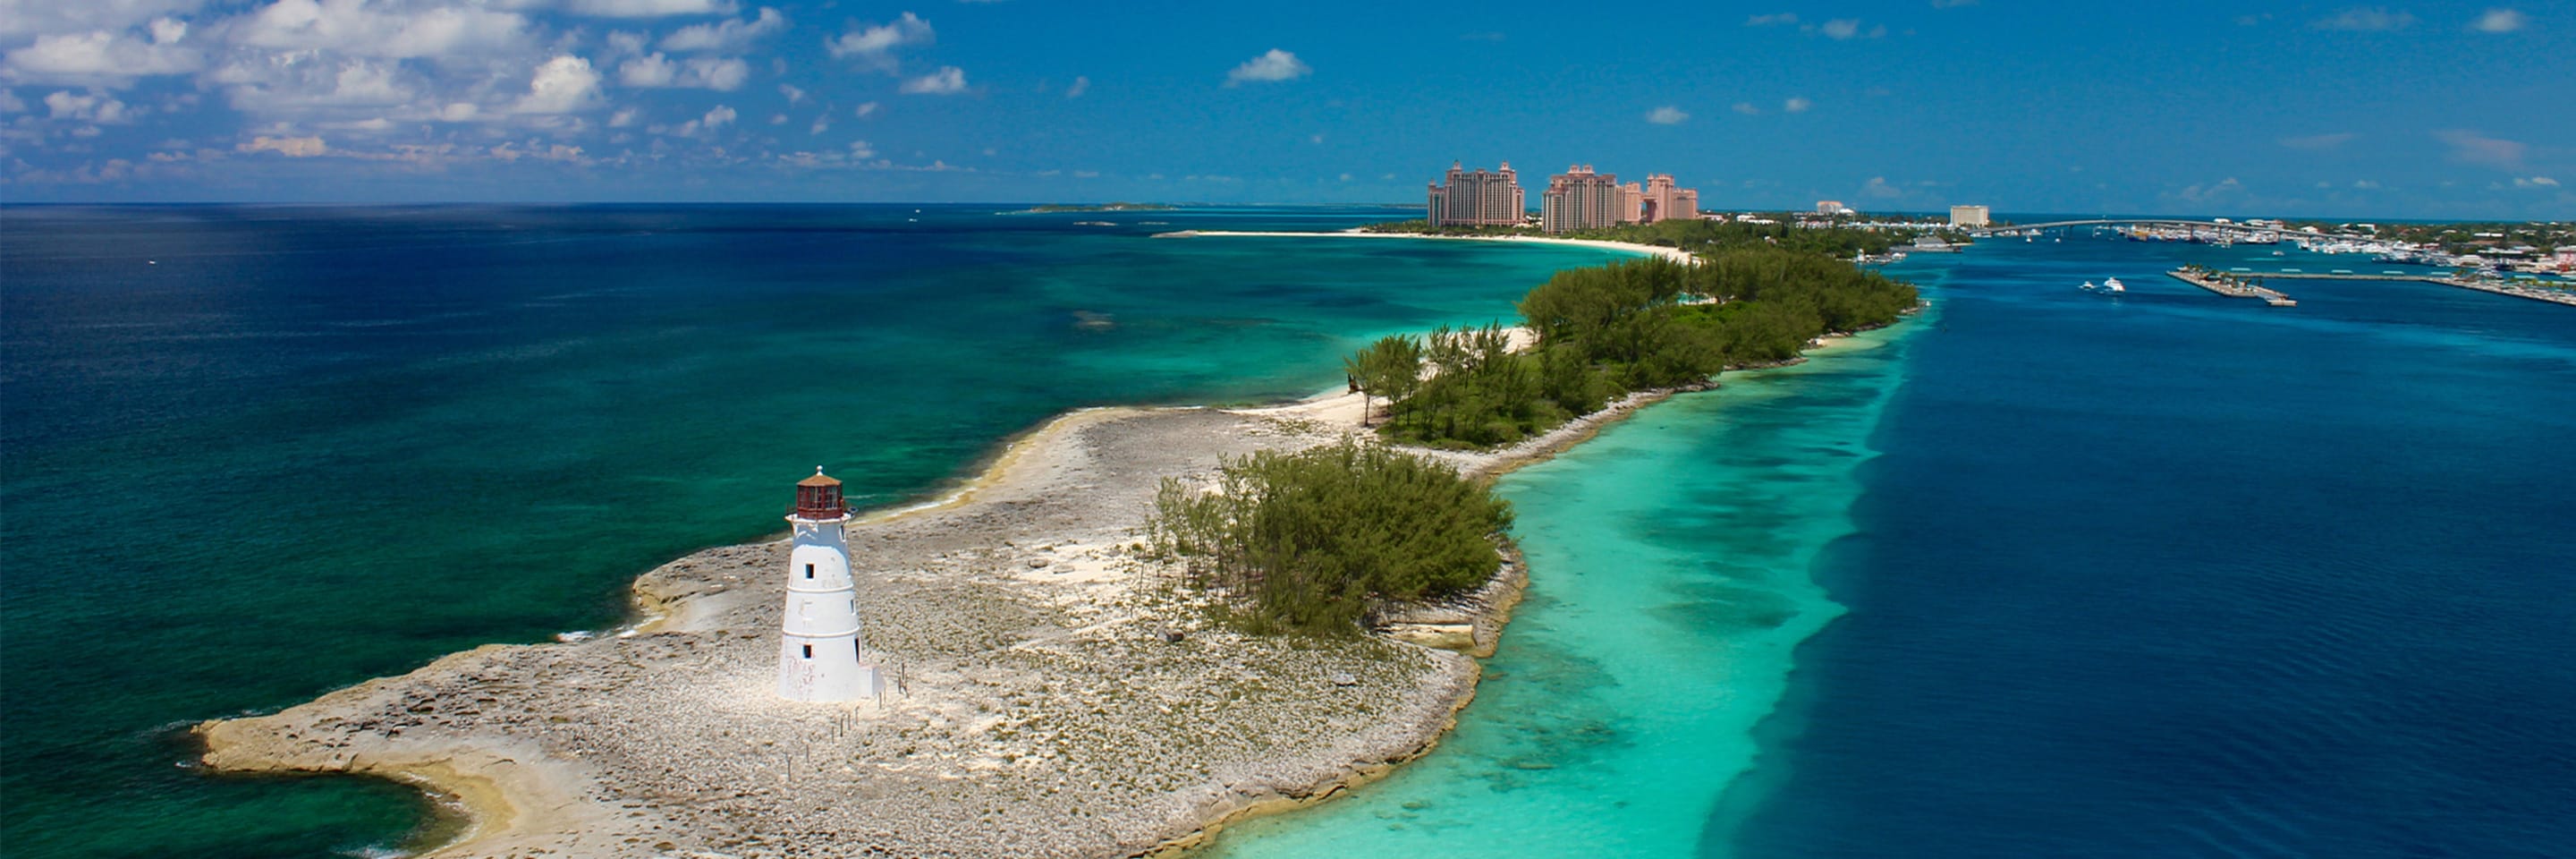 Hoteles en Bahamas
